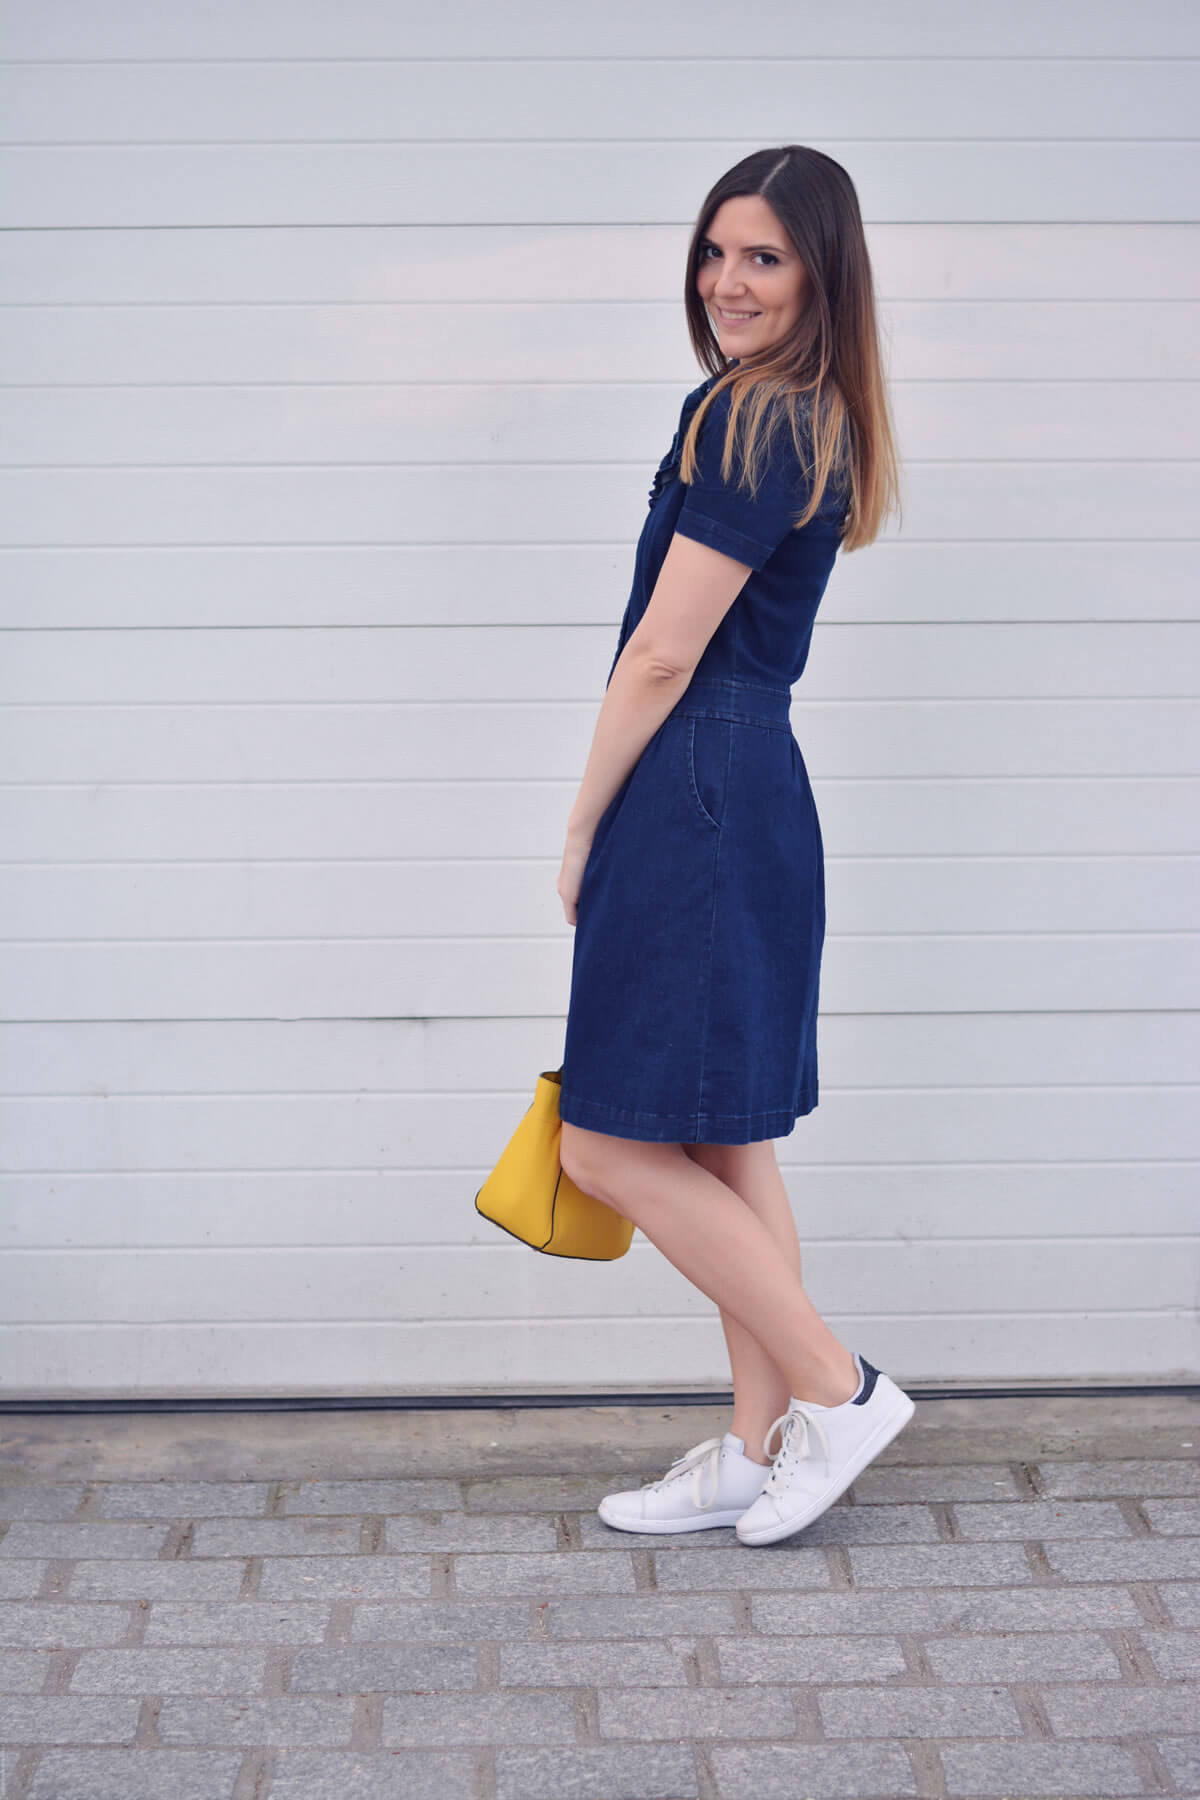 comment porter la robe en jean blog mode paris